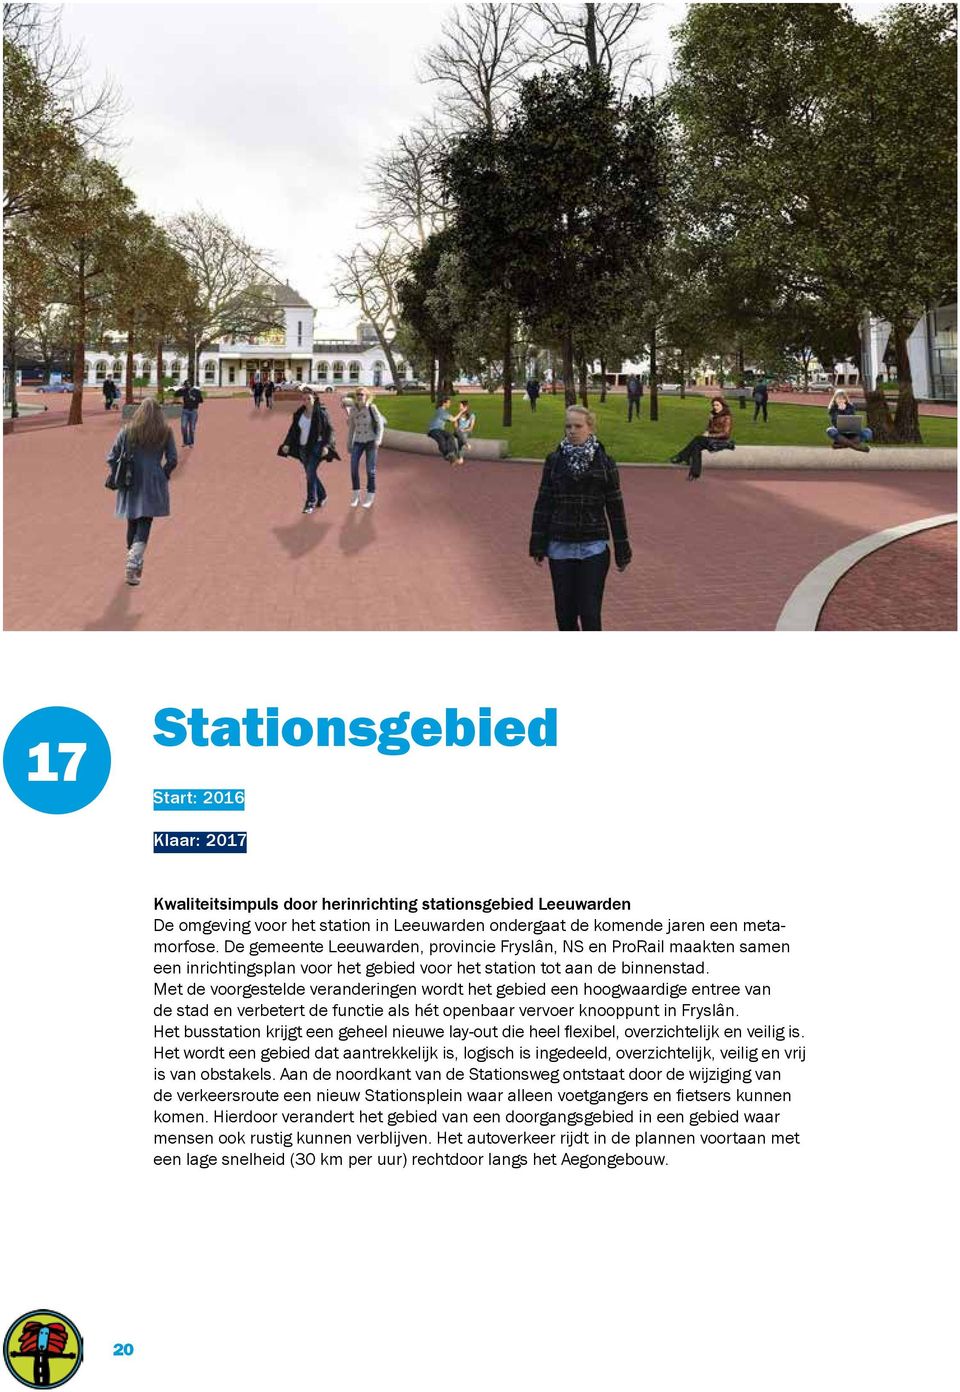 Met de voorgestelde veranderingen wordt het gebied een hoogwaardige entree van de stad en verbetert de functie als hét openbaar vervoer knooppunt in Fryslân.